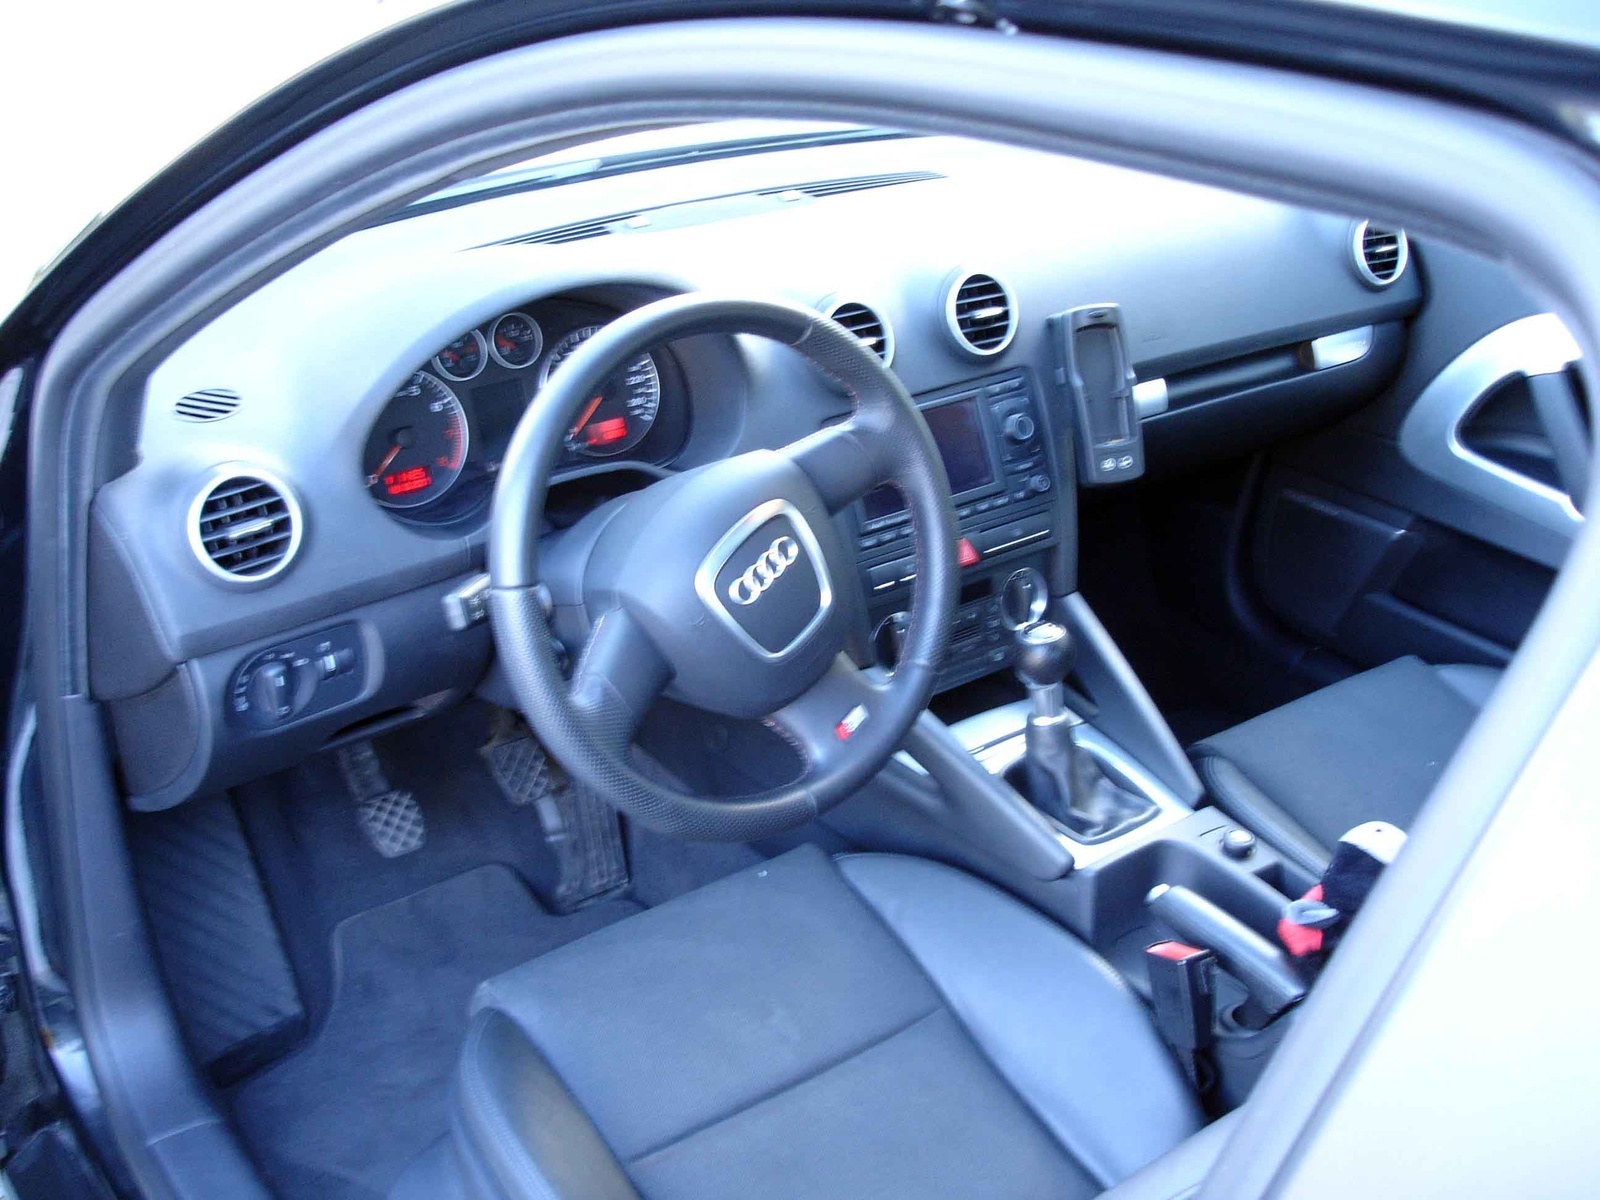 2005 Audi A3 Interior Pictures Cargurus